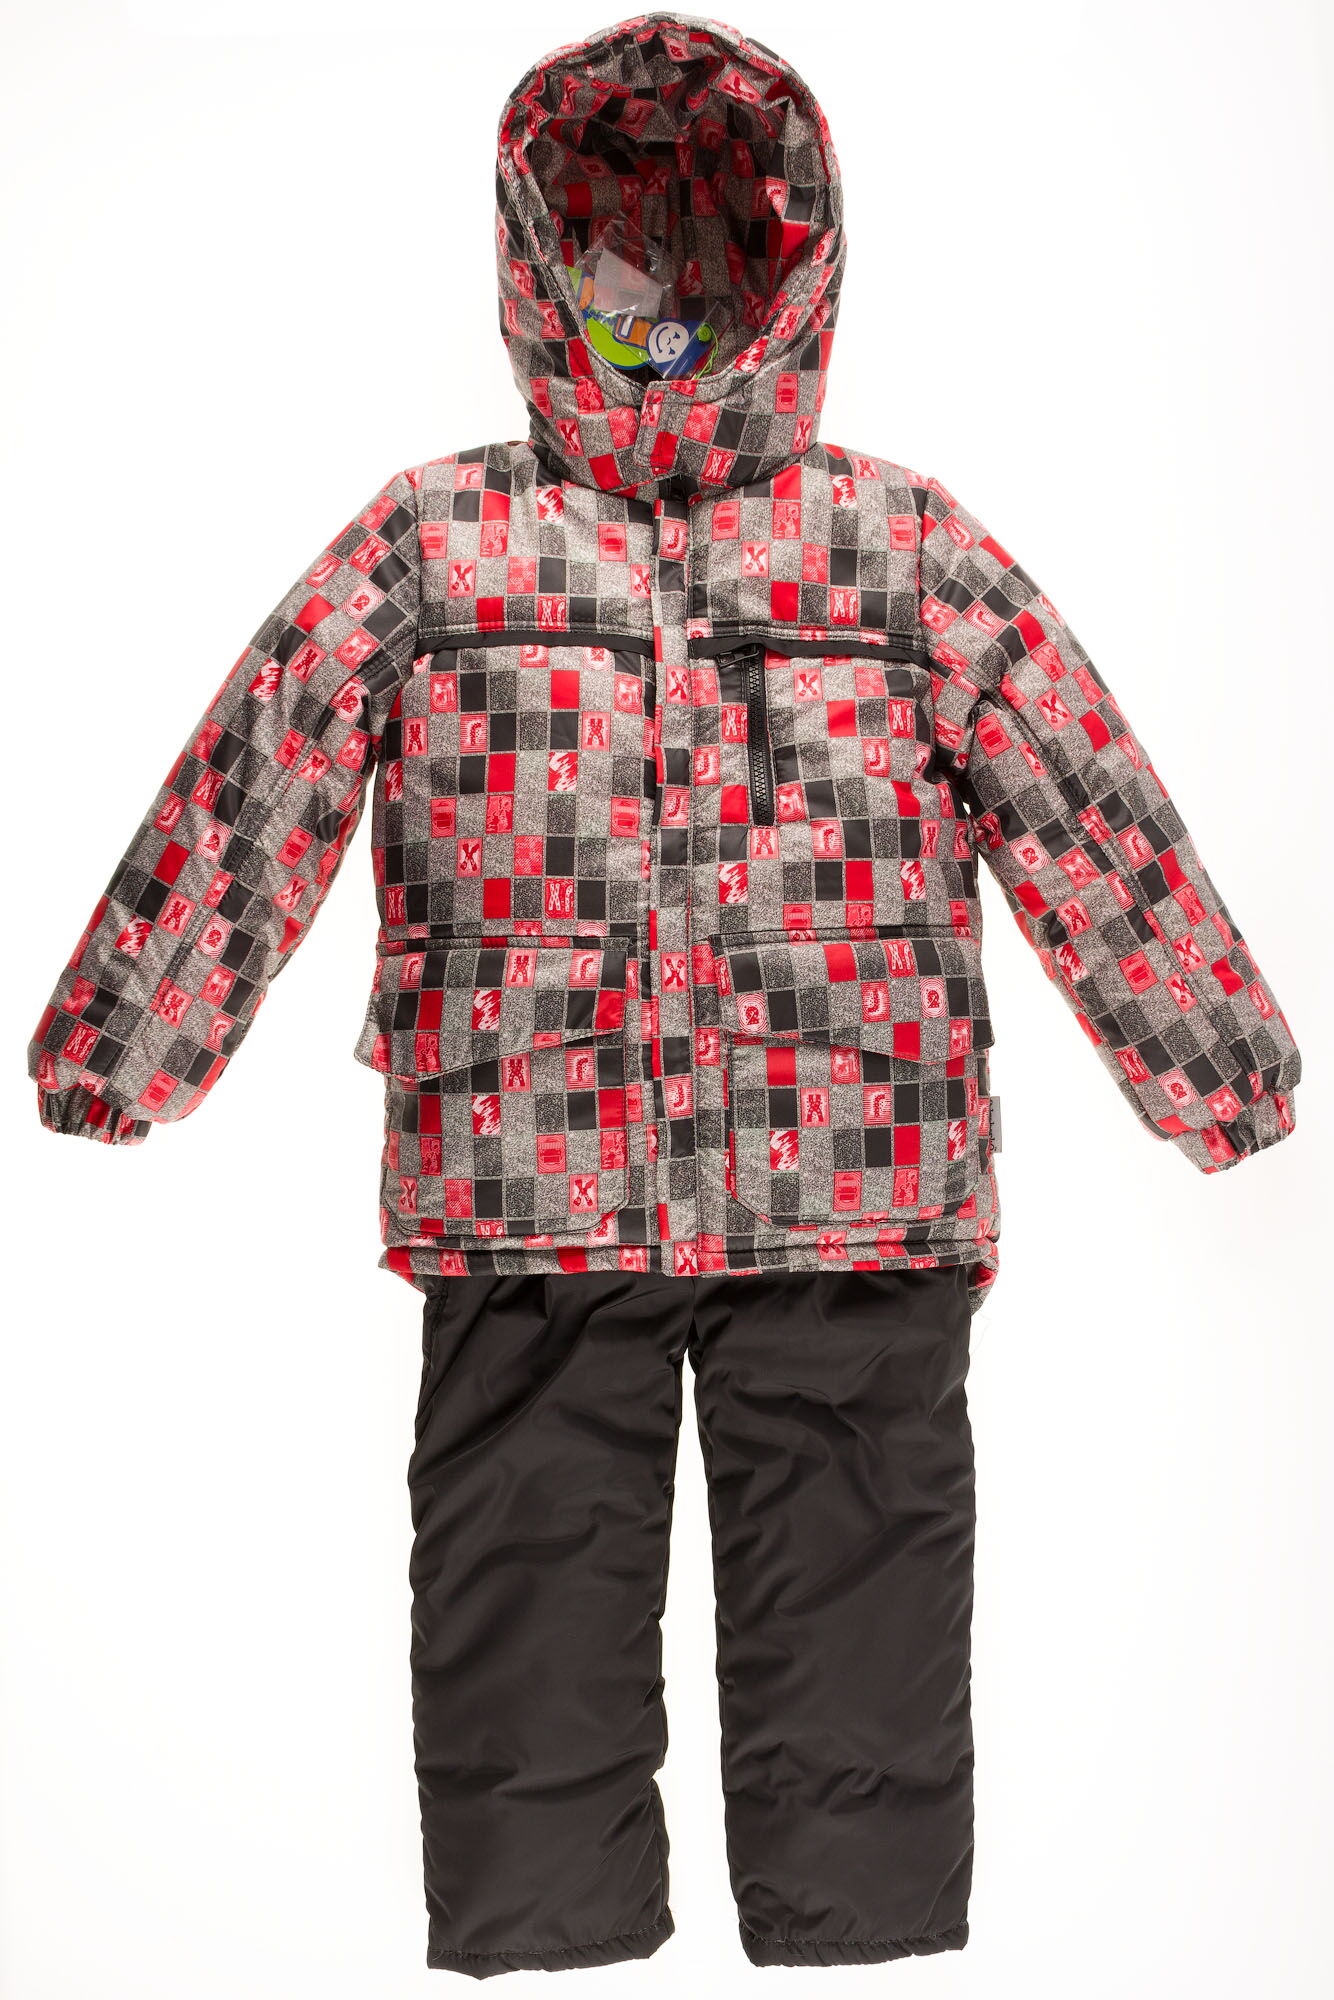 Комбинезон зимний раздельный для мальчика (куртка+штаны) Одягайко красный квадрат 20088+01241О - цена